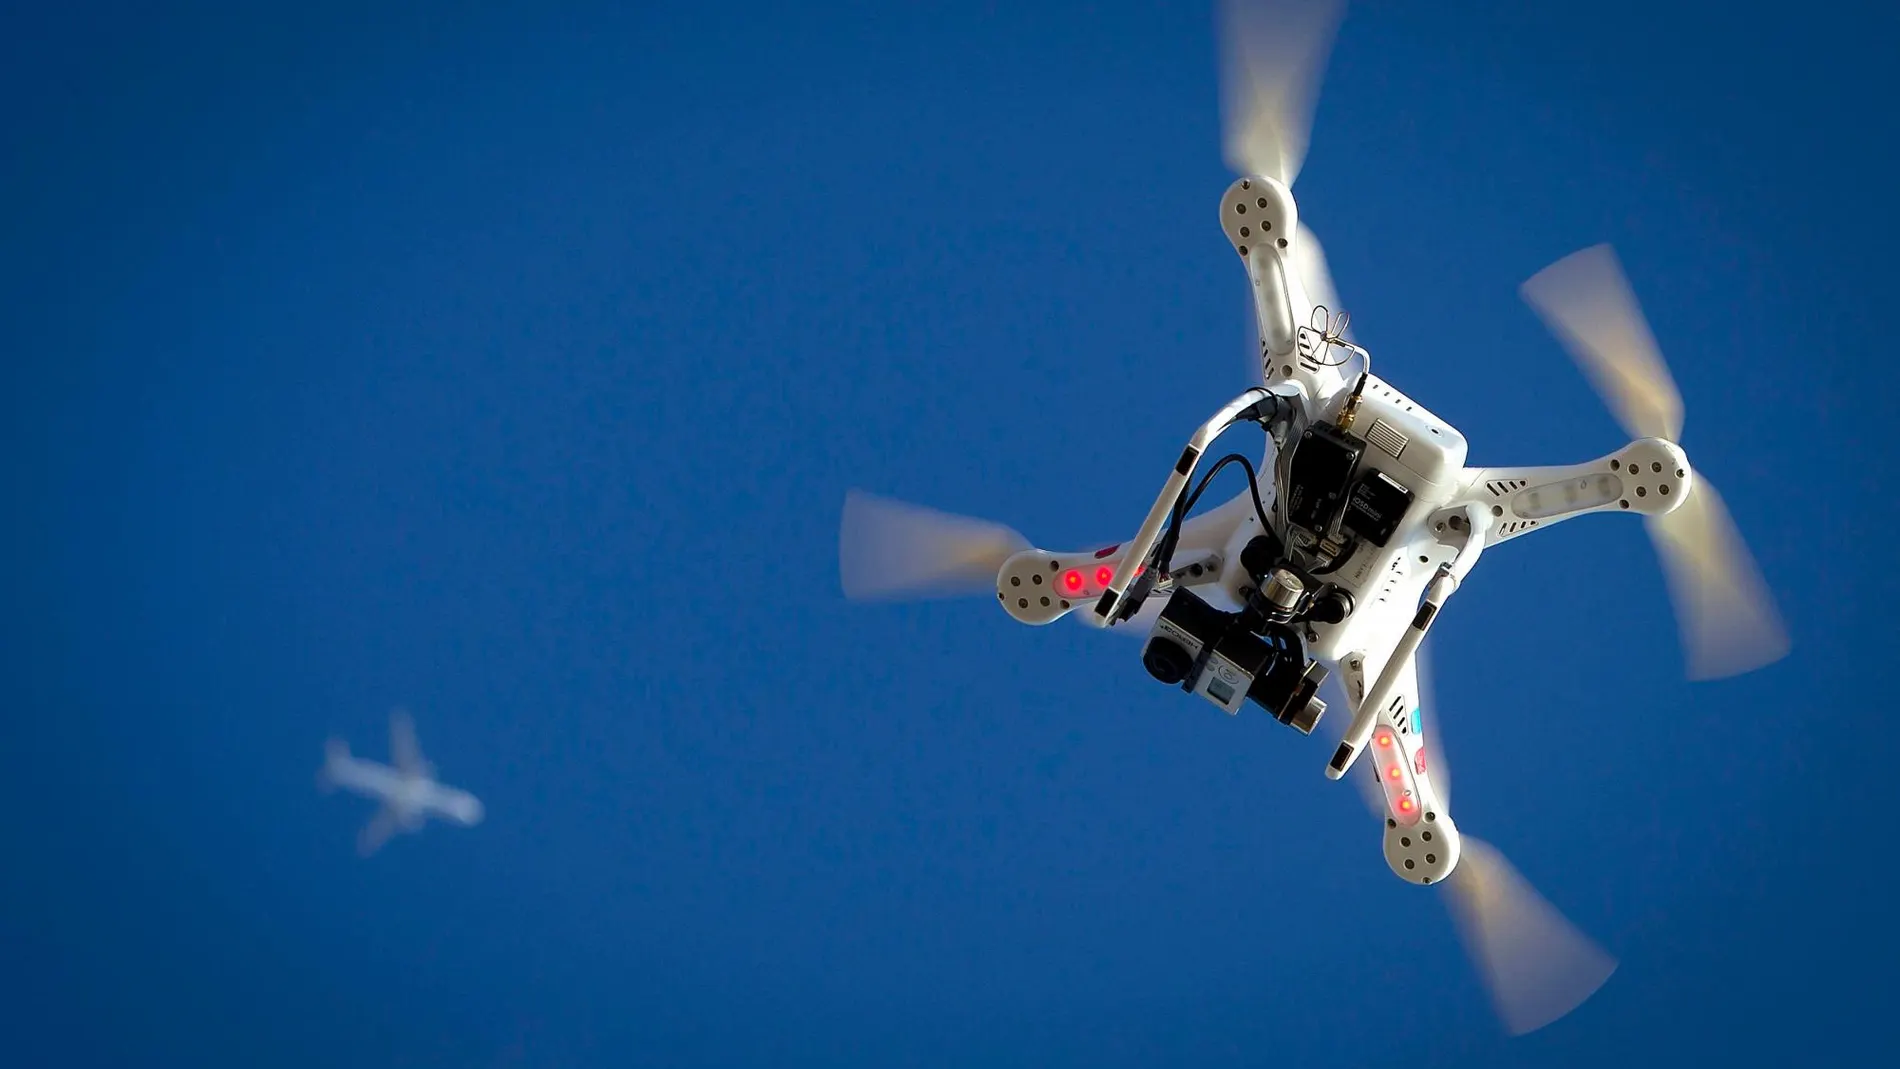 El sistema, que ya ha empezado a funcionar, puede comprobar si el dron detectado tiene o no autorización para volar sobre la zona en la que lo esté haciendo